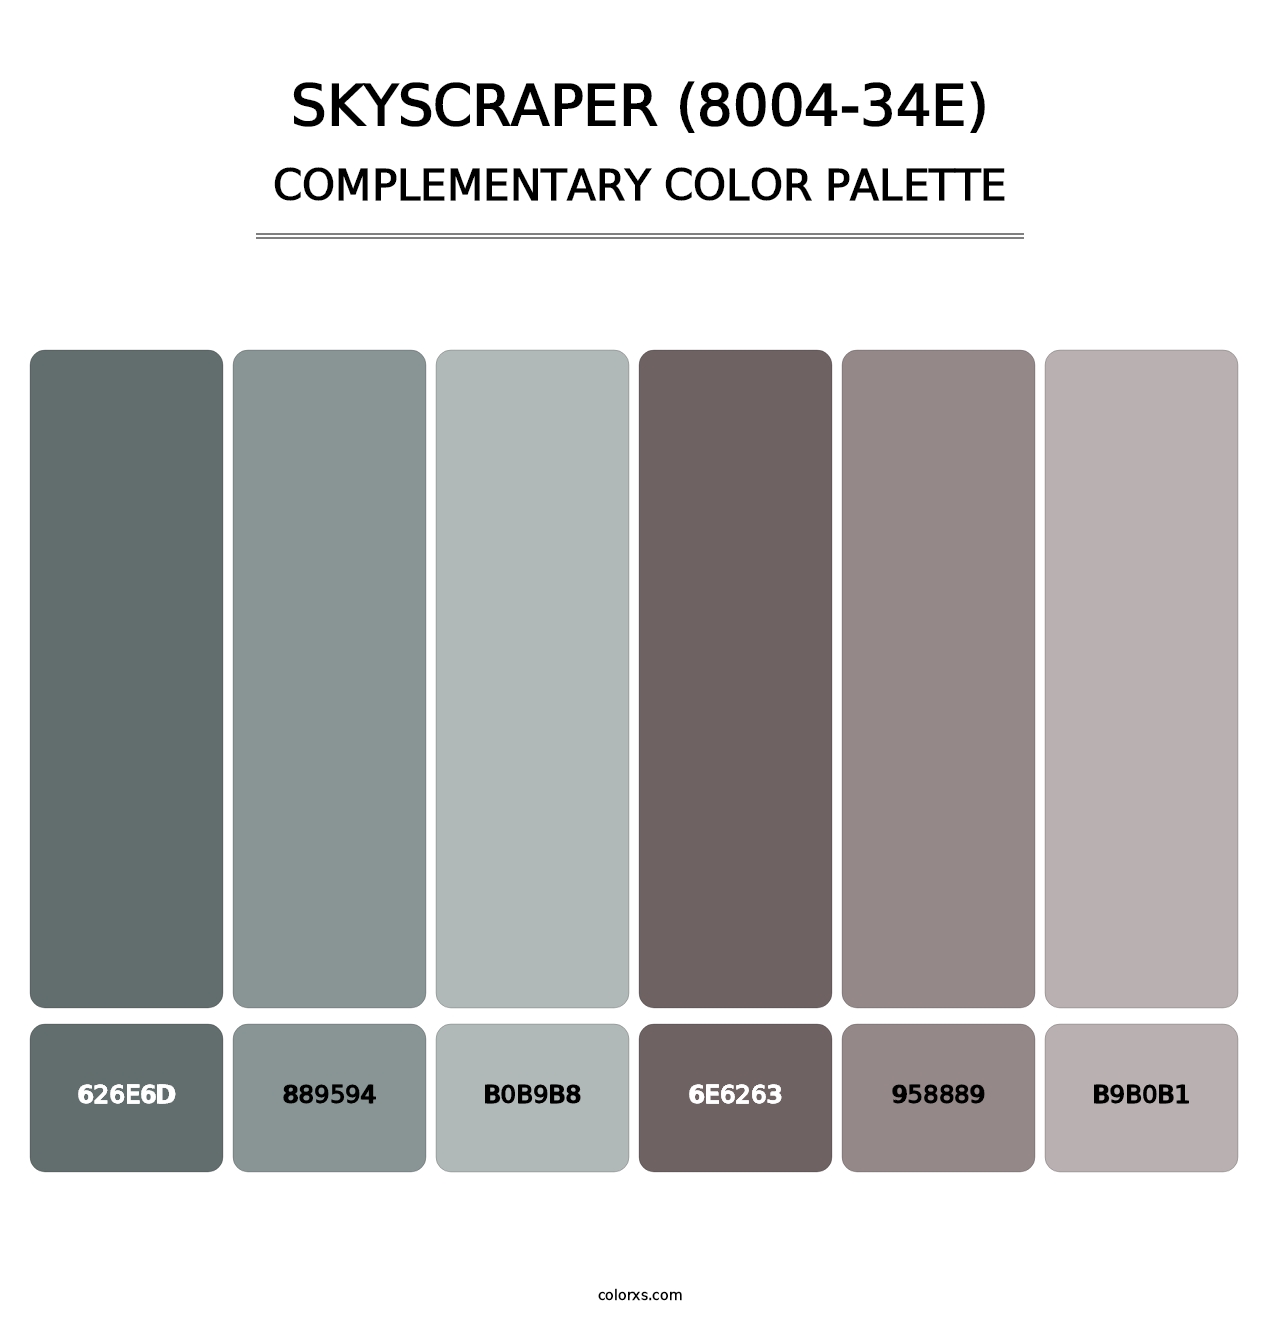 Skyscraper (8004-34E) - Complementary Color Palette